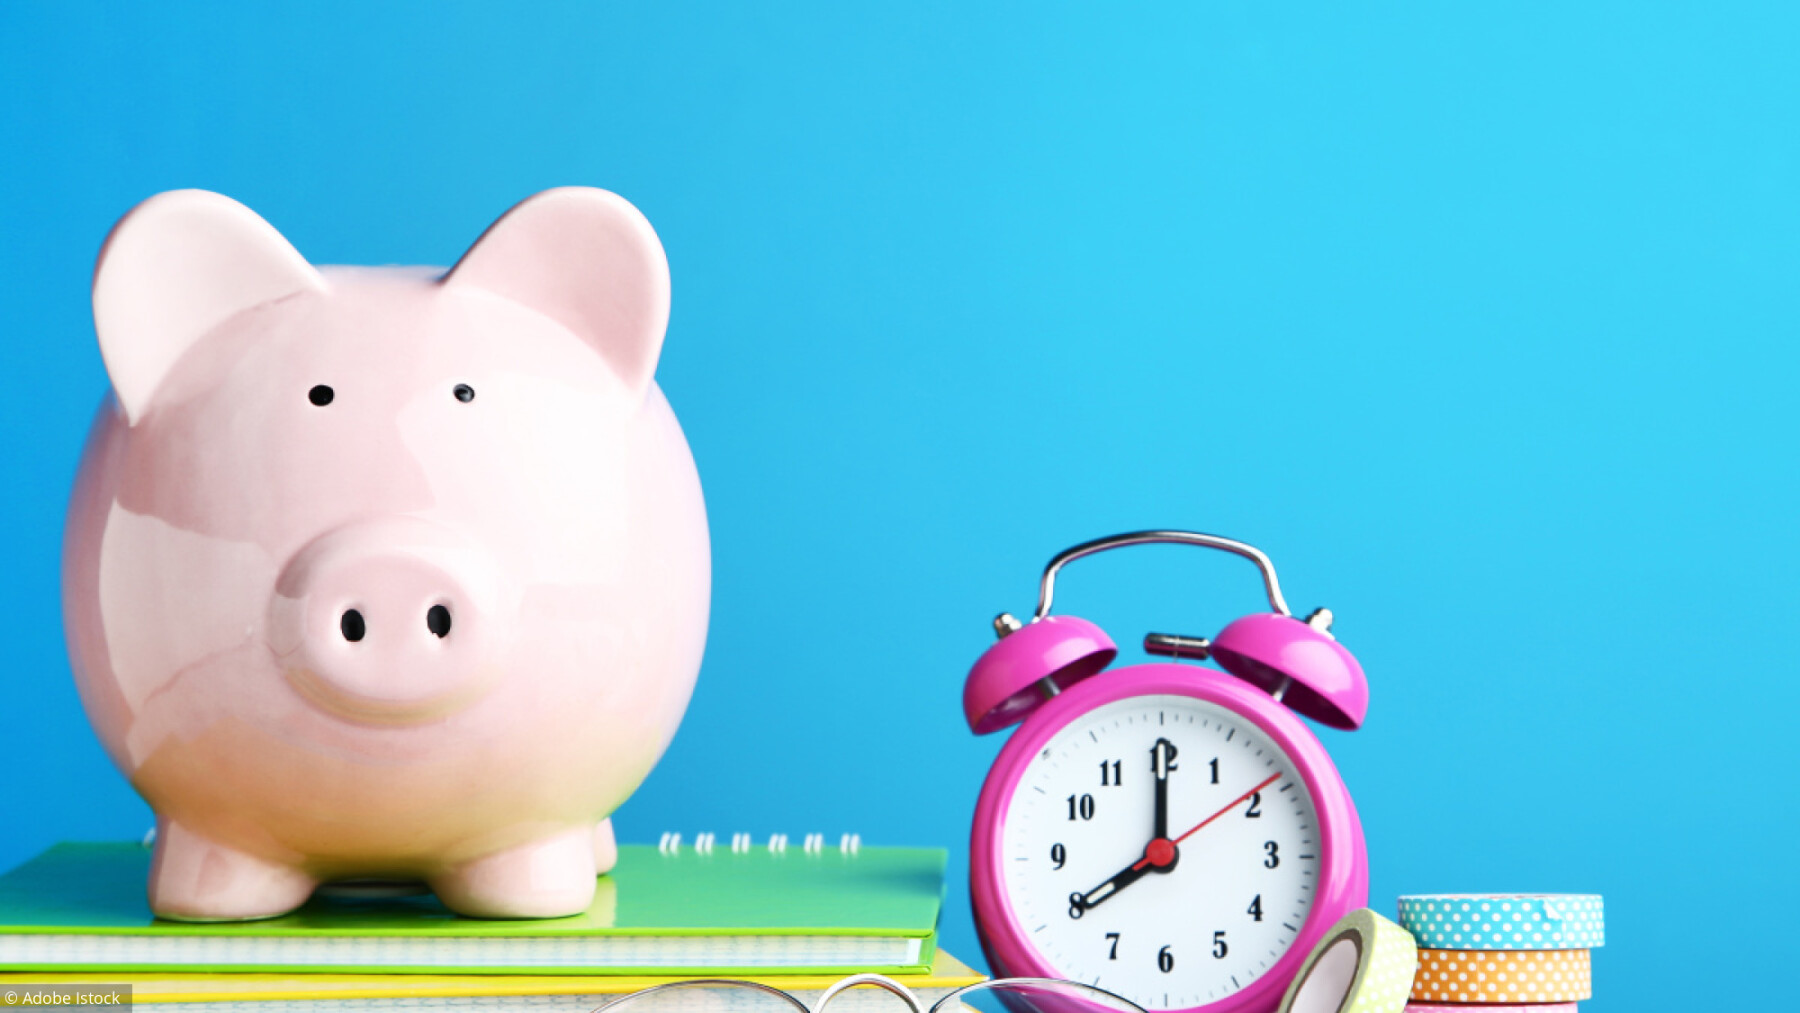 Epargne salariale: comment bien m’en servir pour compléter ma retraite?